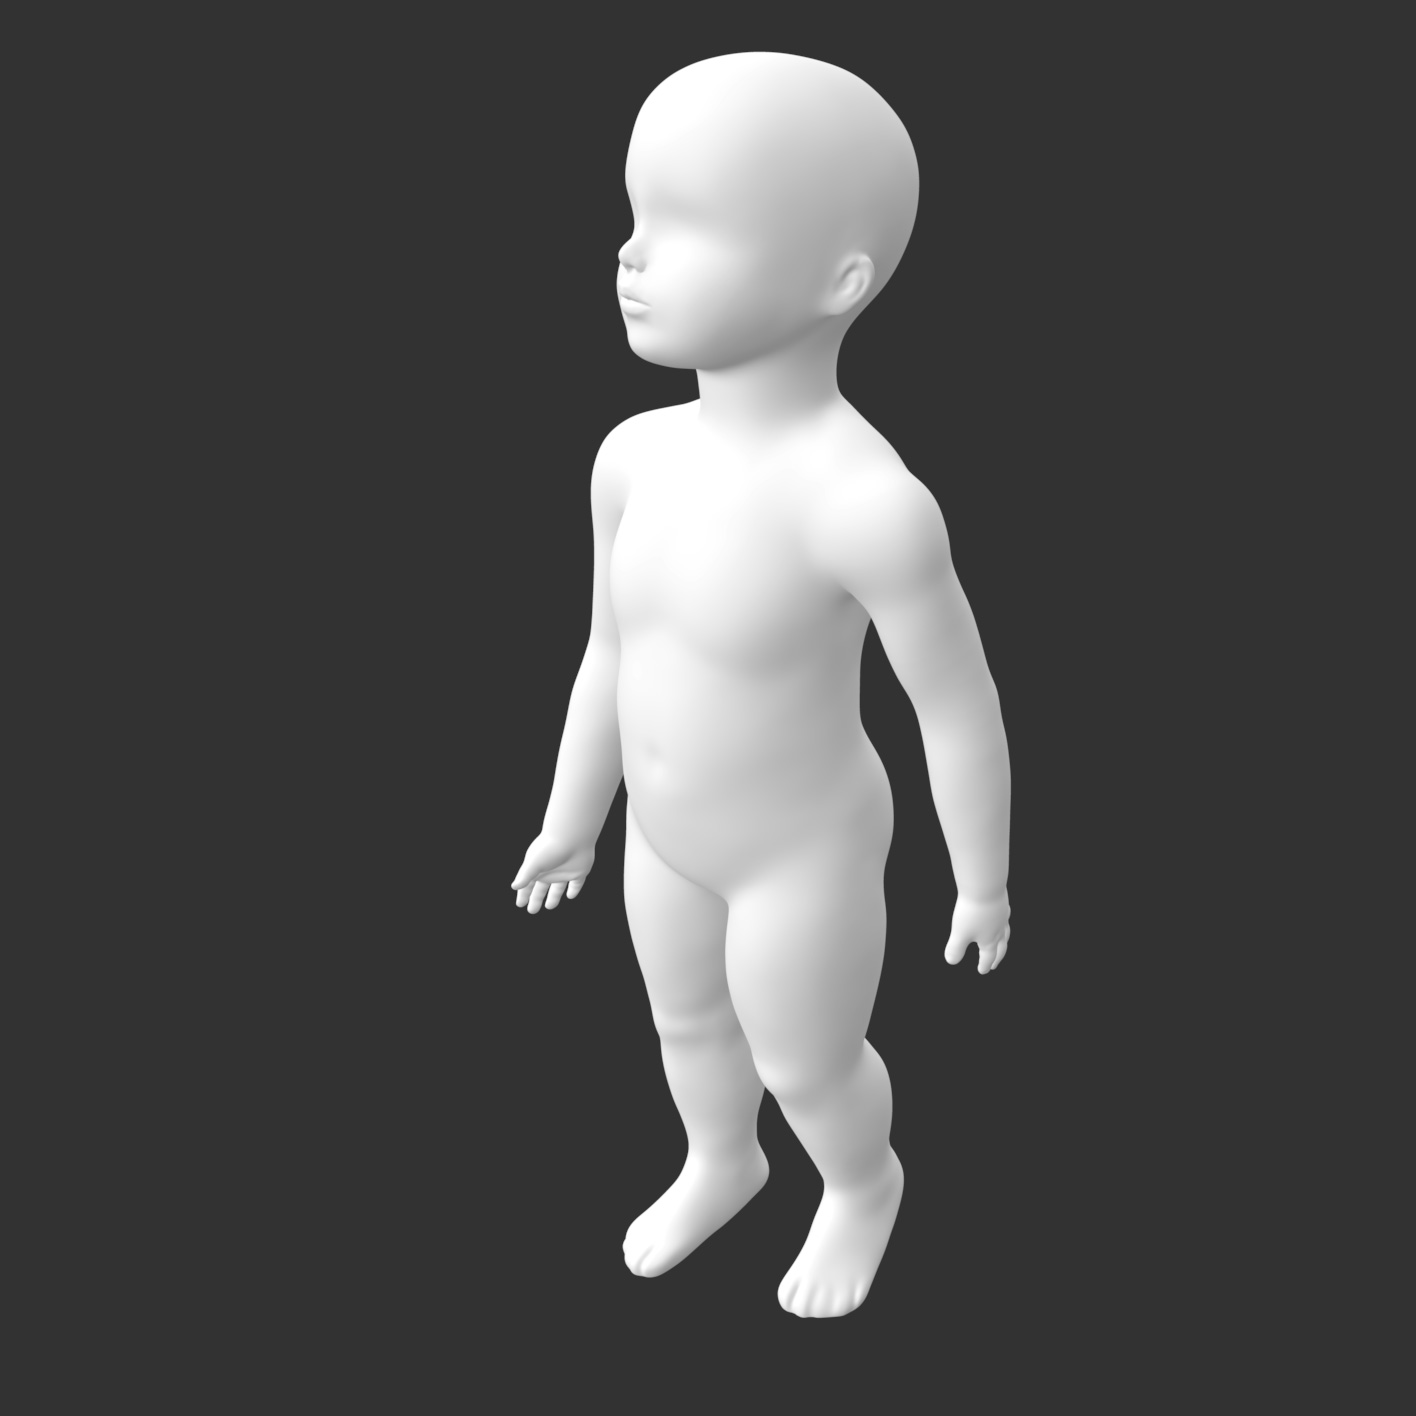 Çocuk bebek manken 3d baskı modeli